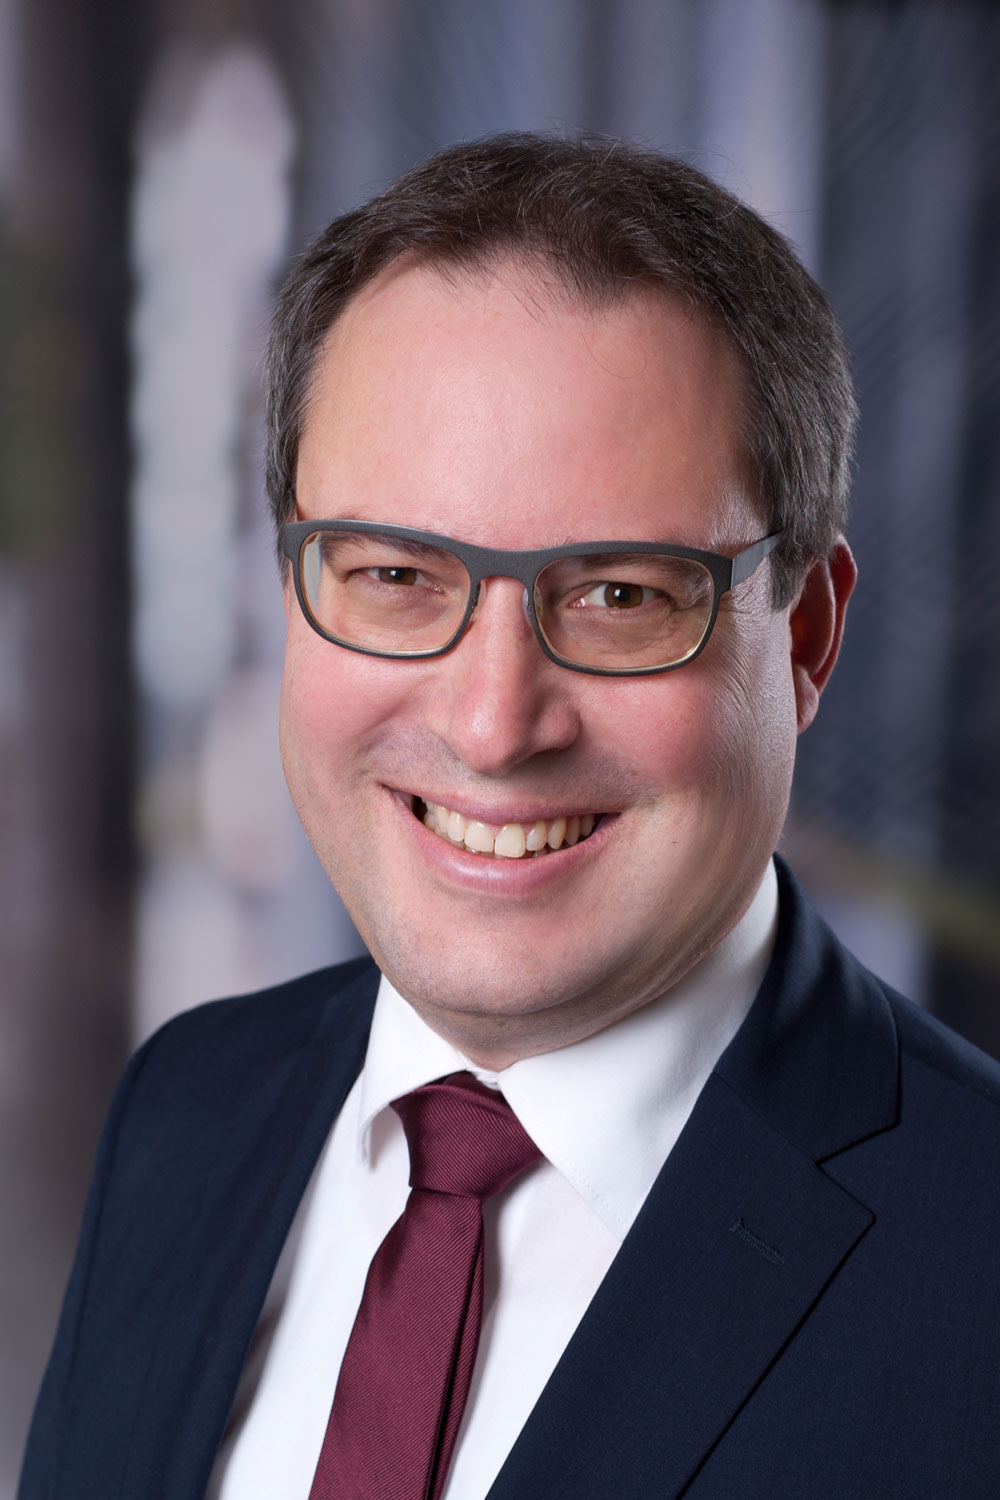 Florian Luderschmid, Regierungspräsident von Oberfranken, Vorsitzender des Stiftungsrats der Oberfrankenstiftung